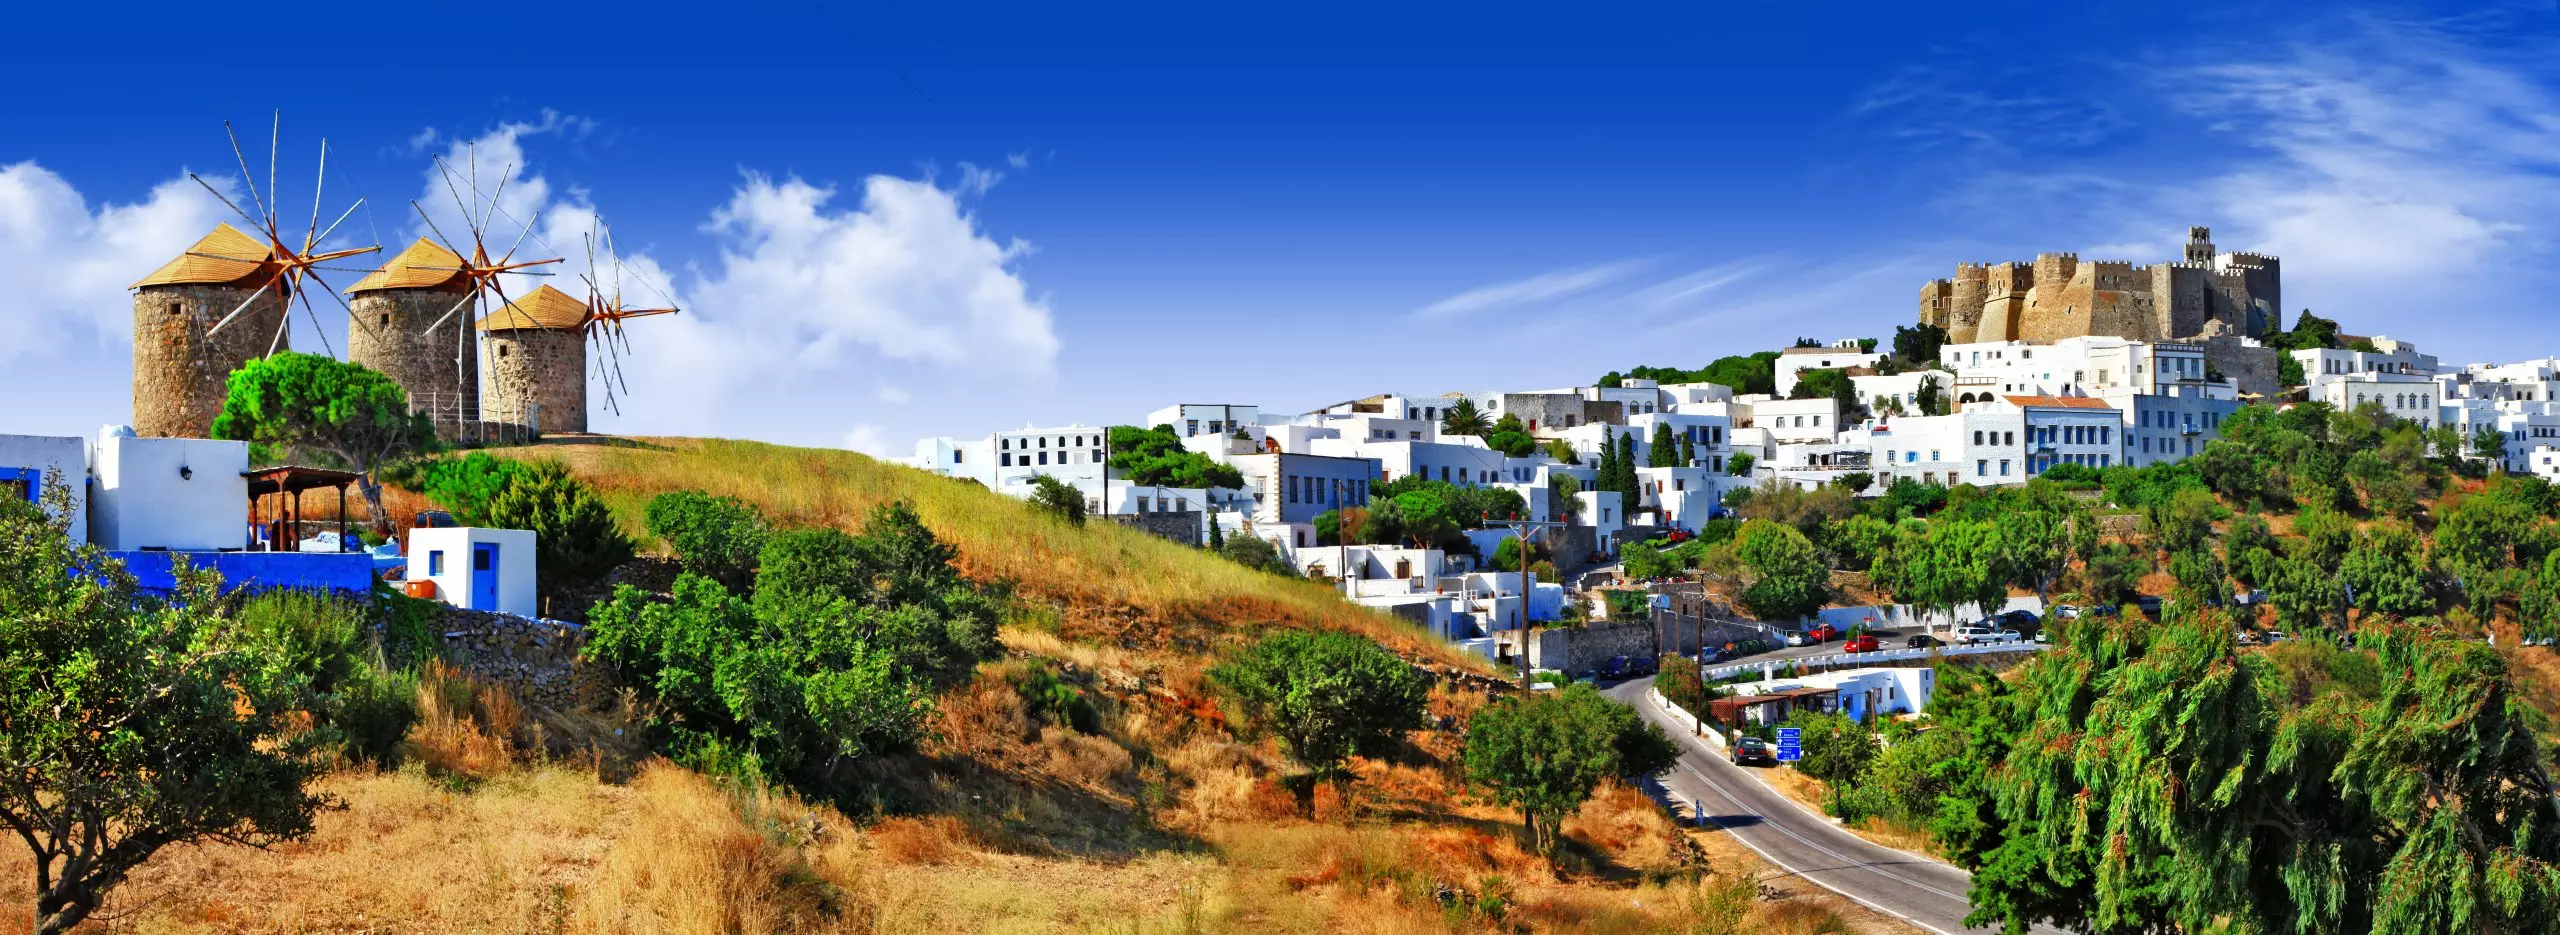 1 Panorama of Patmos